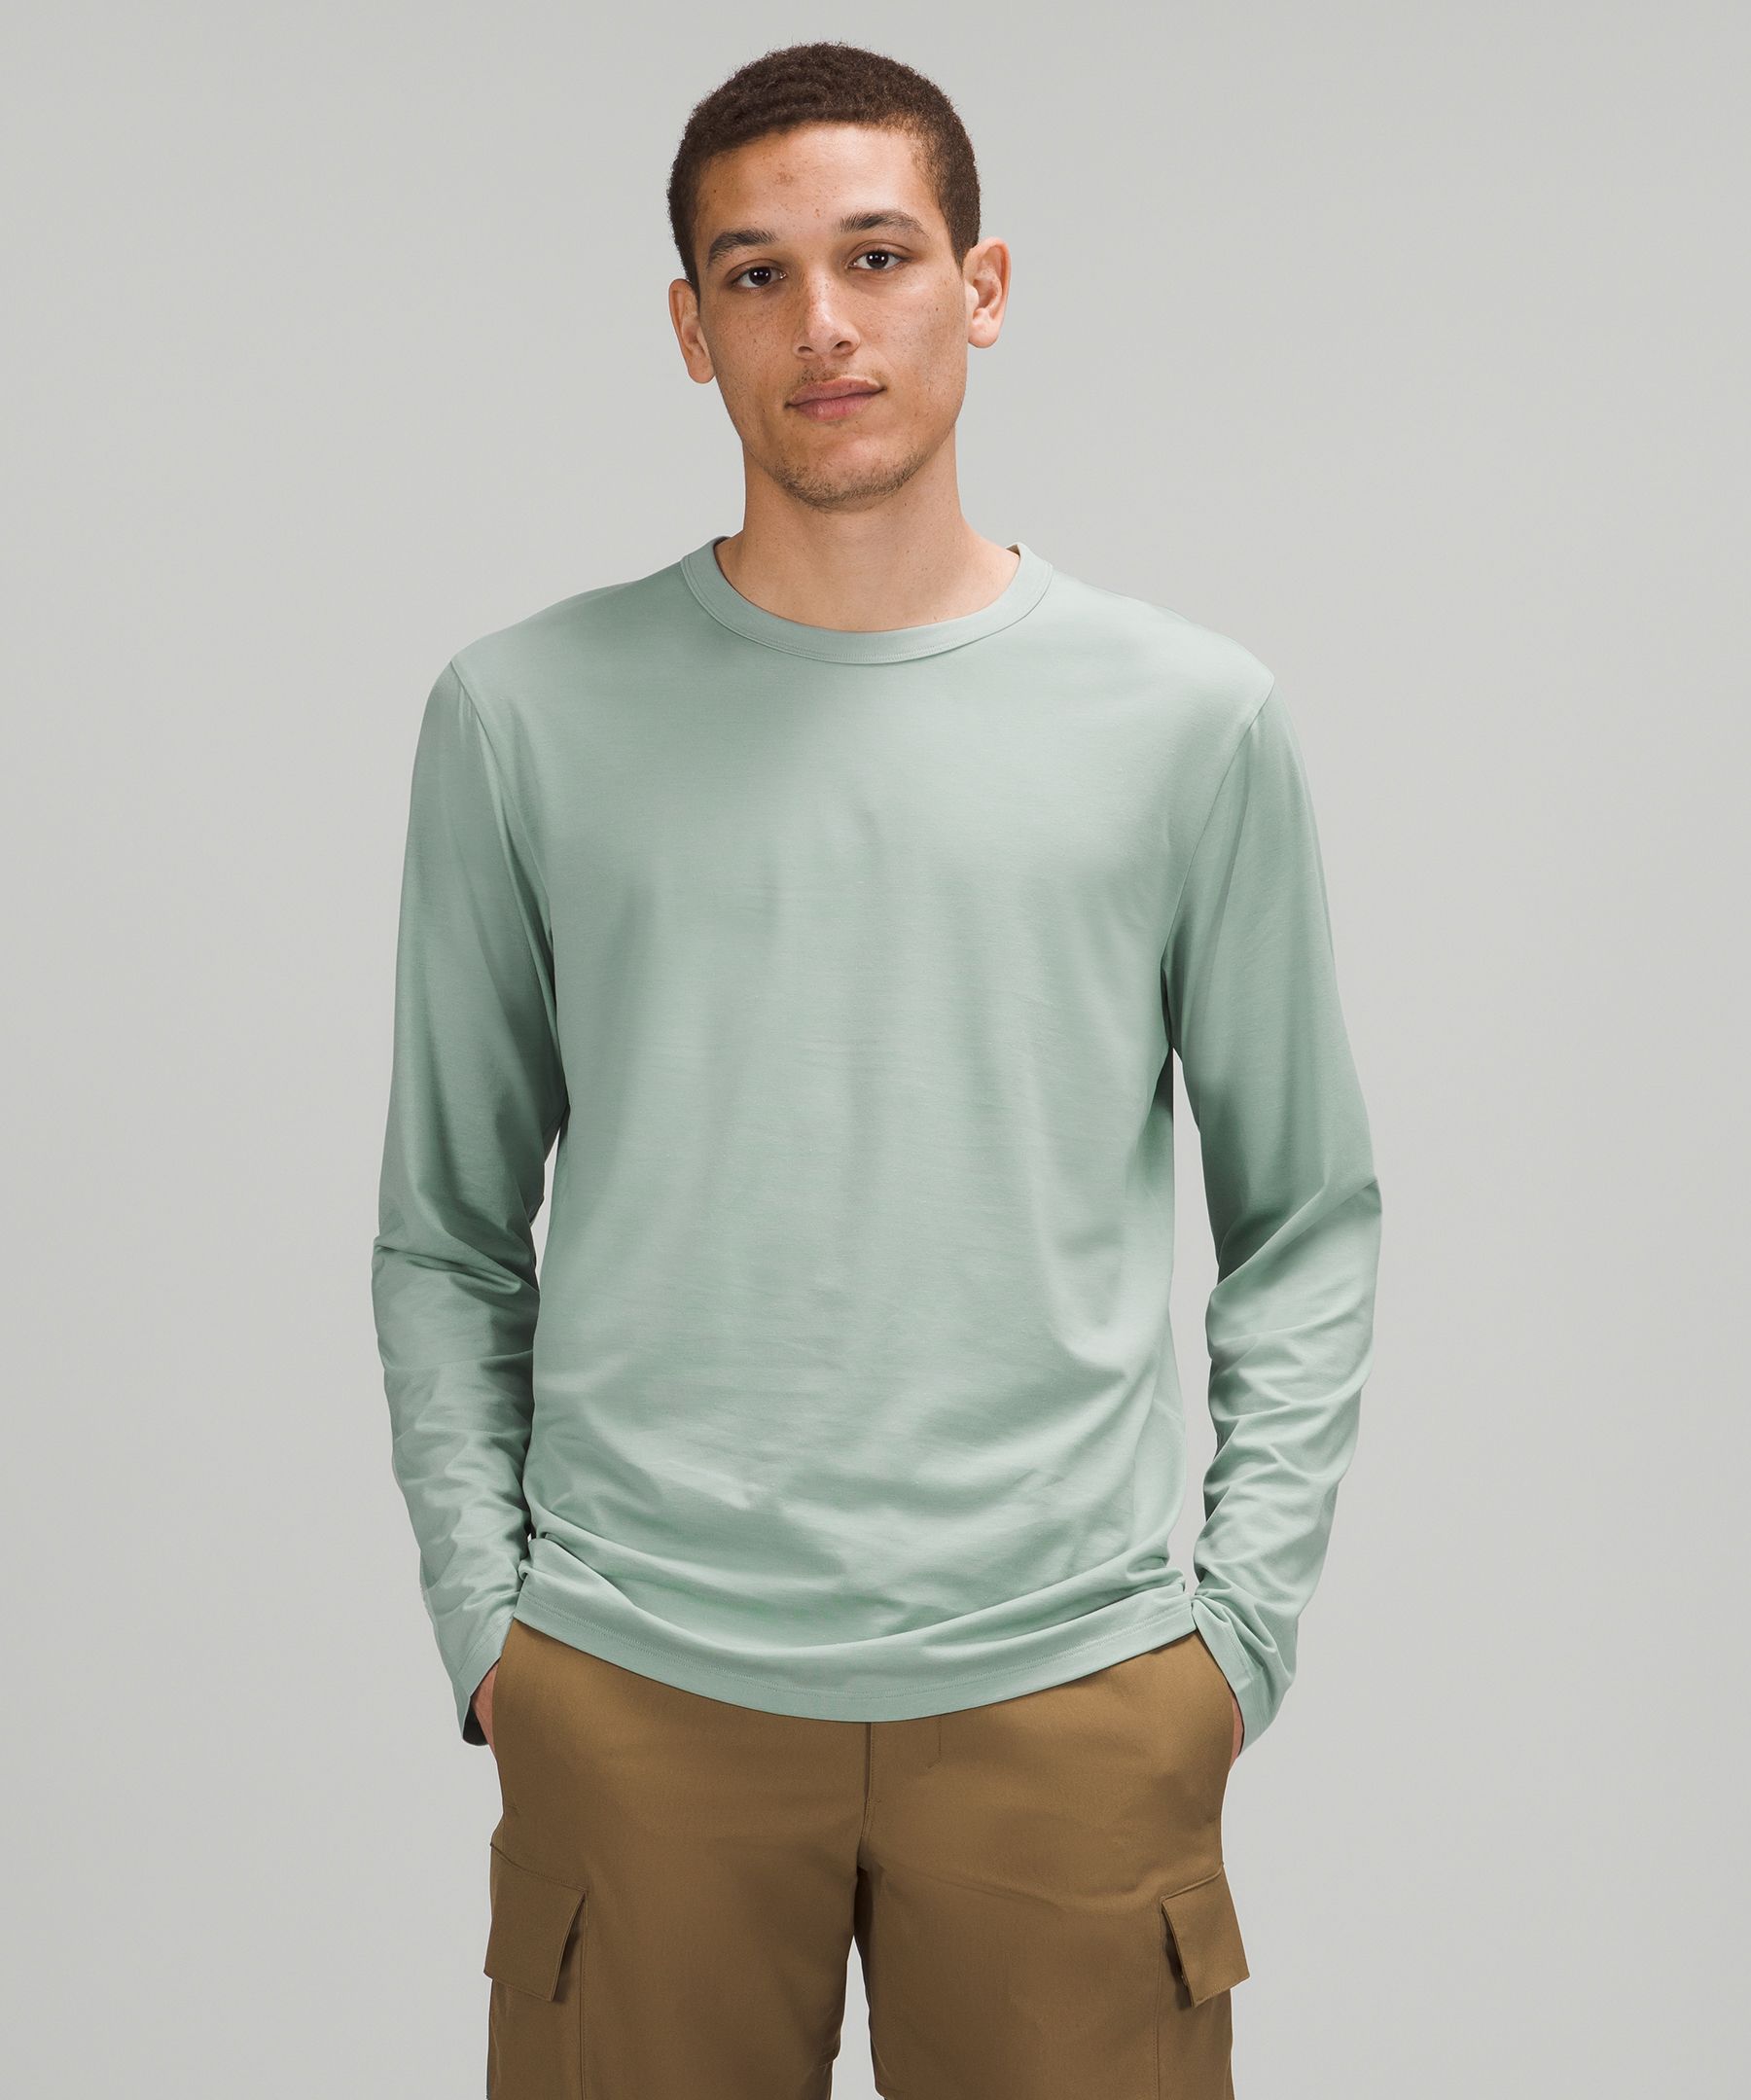 Men's Long Sleeve Shirts | lululemon